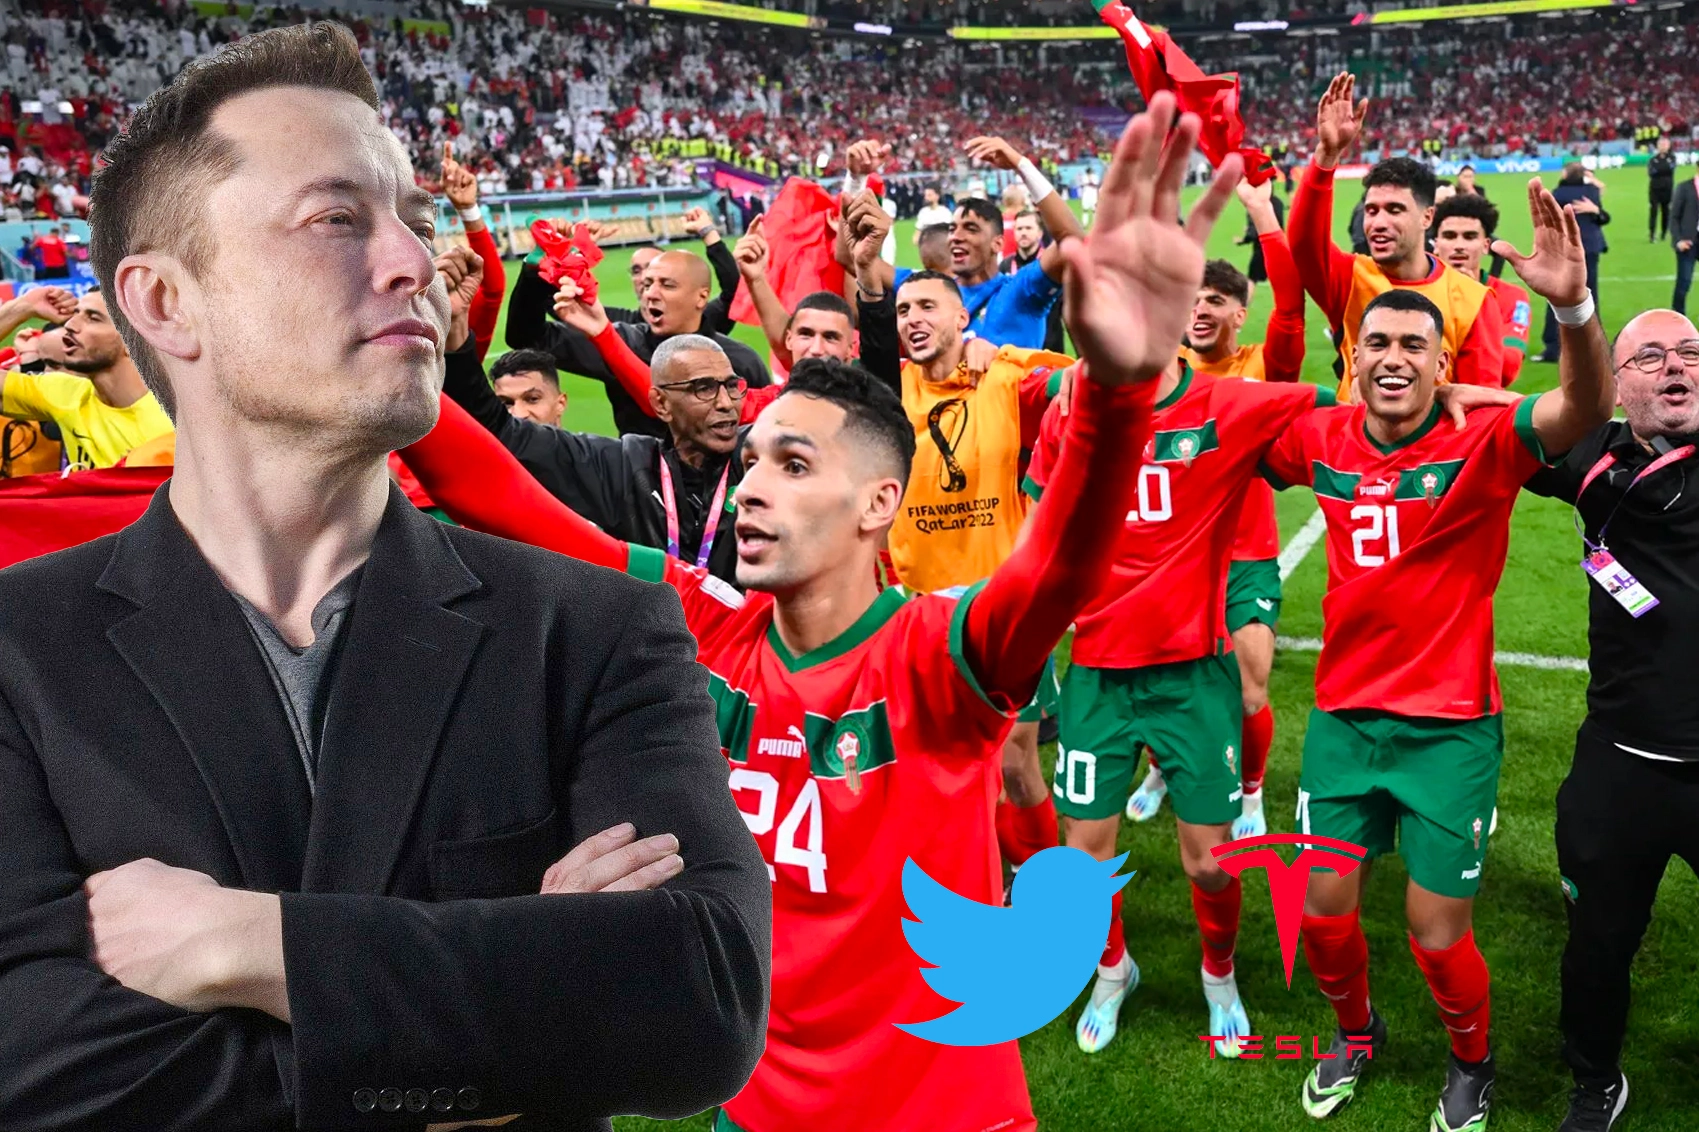 إيلون ماسك “مالك تويتر” يهنئ المنتخب المغربي بفوزه على البرتغال